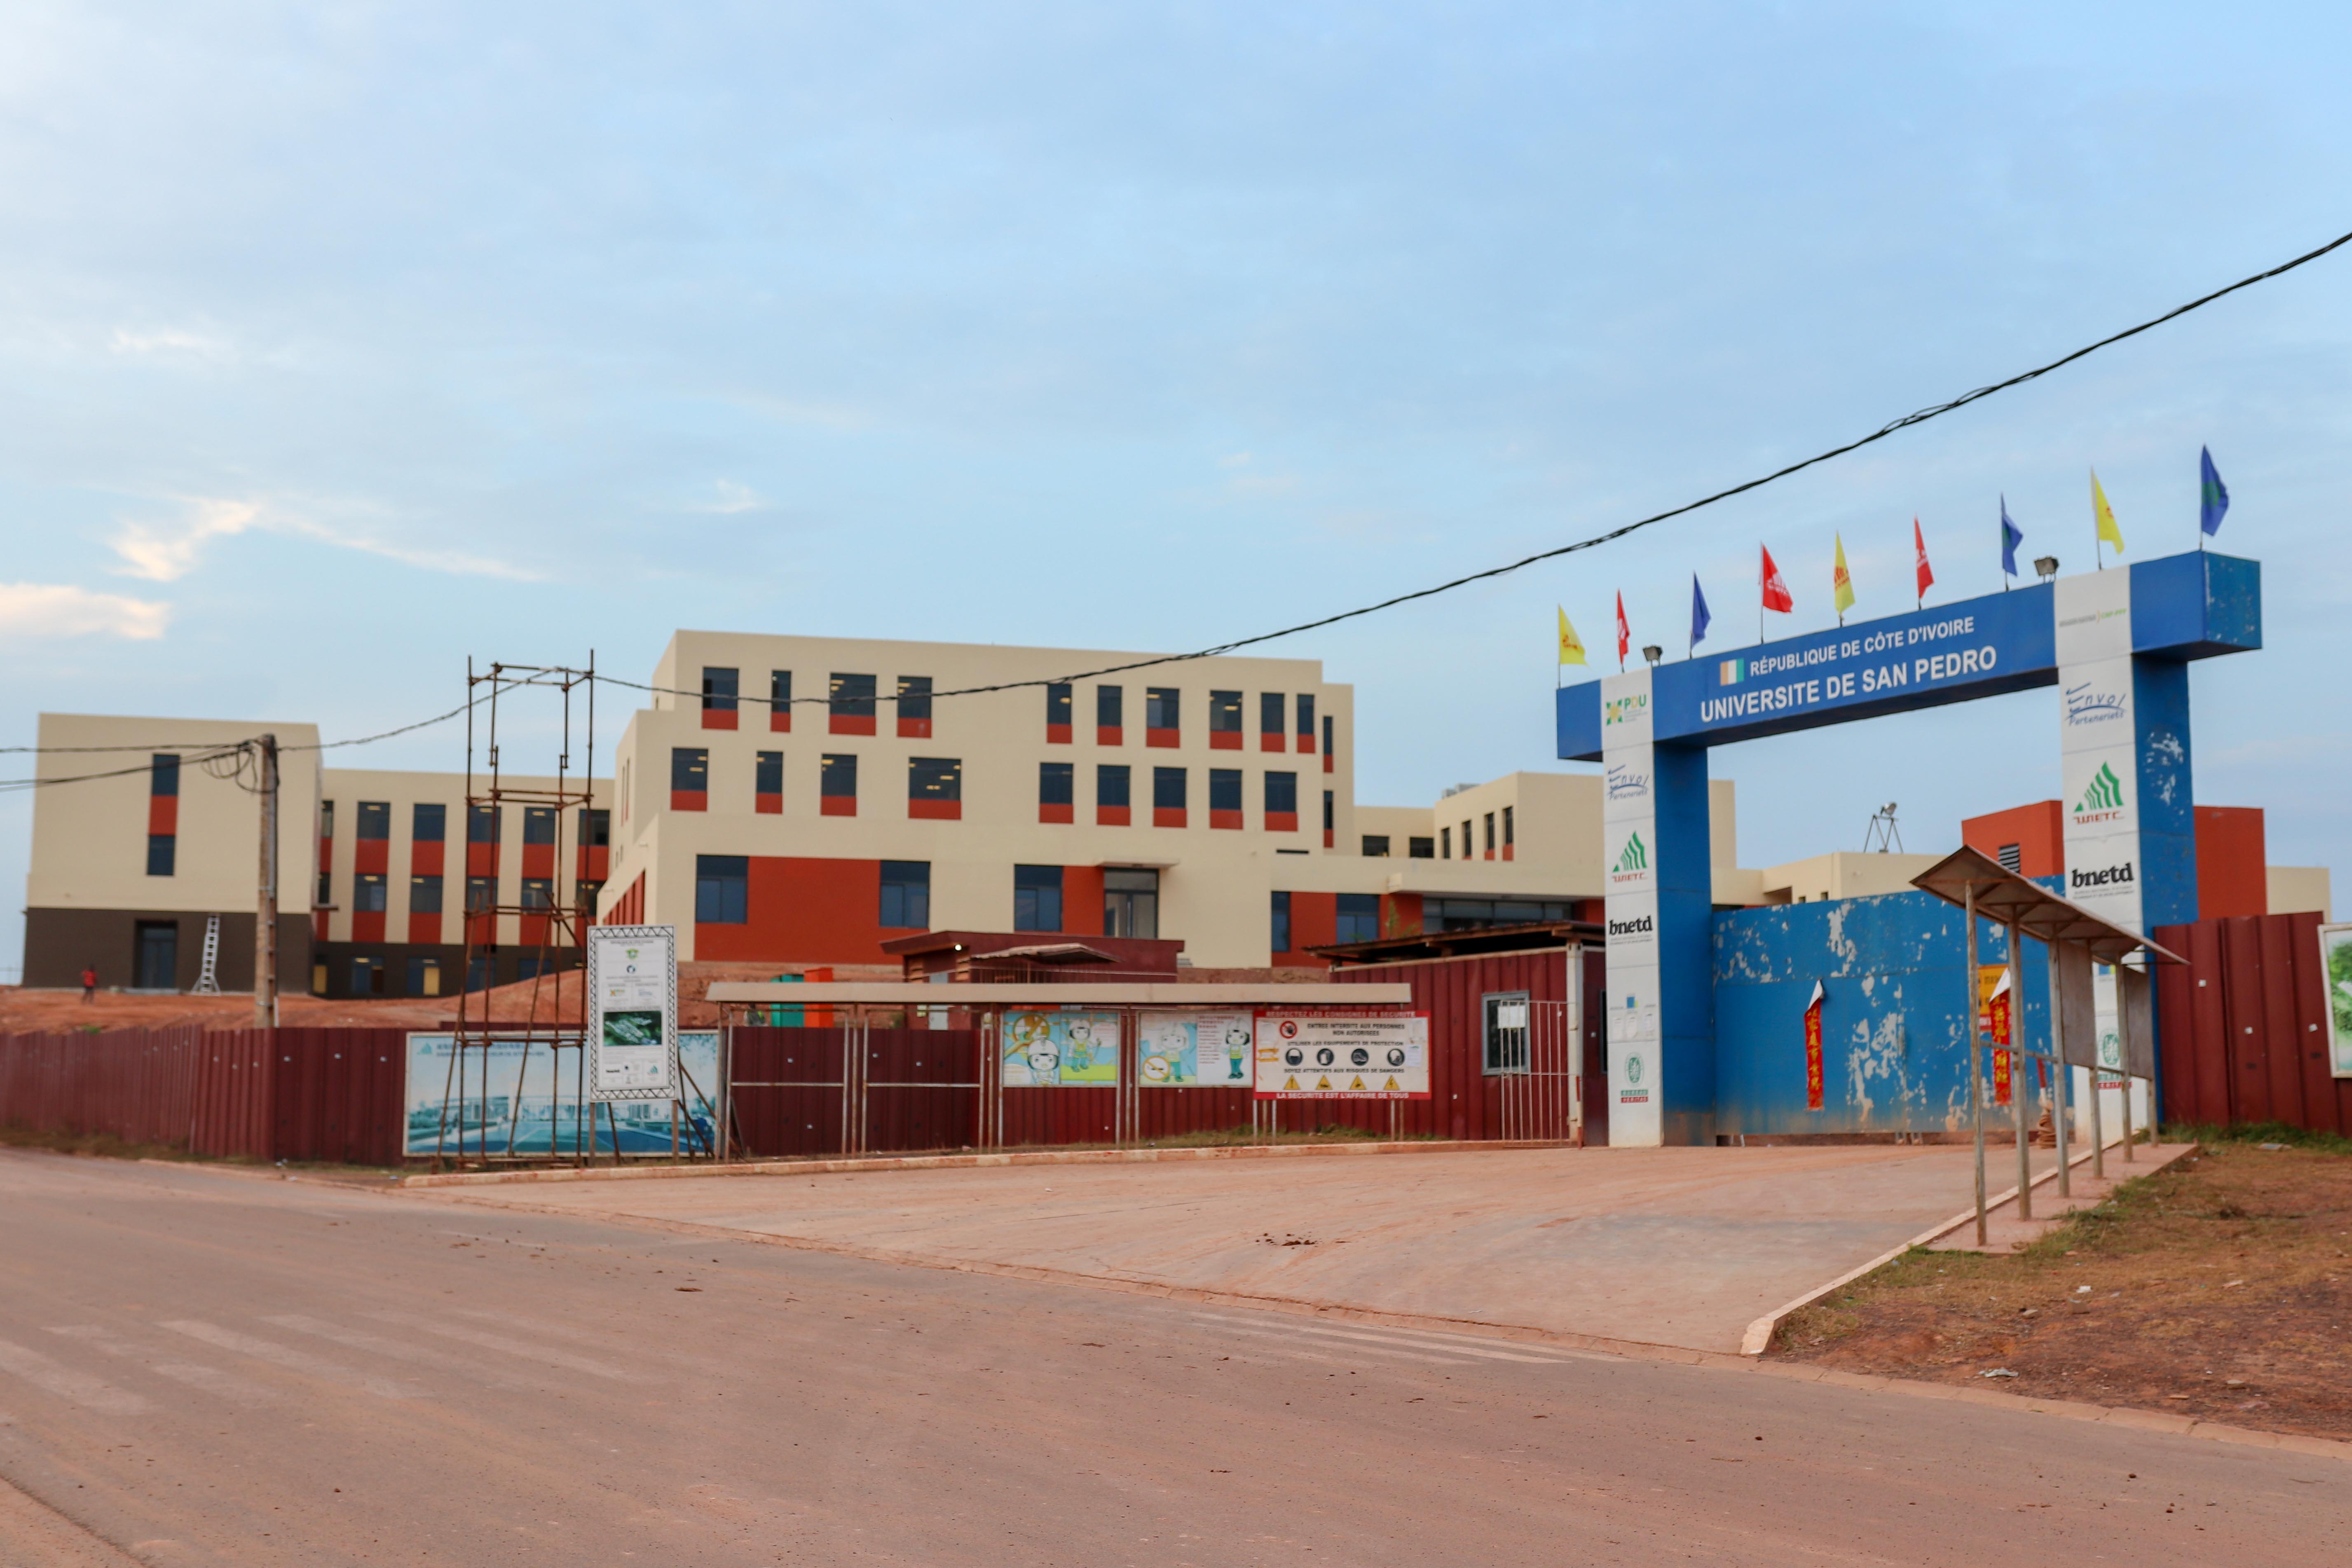 Le Ministre ivoirien Adama Diawara annonce l’ouverture de l’université de San-Pedro courant dernier trimestre 2021